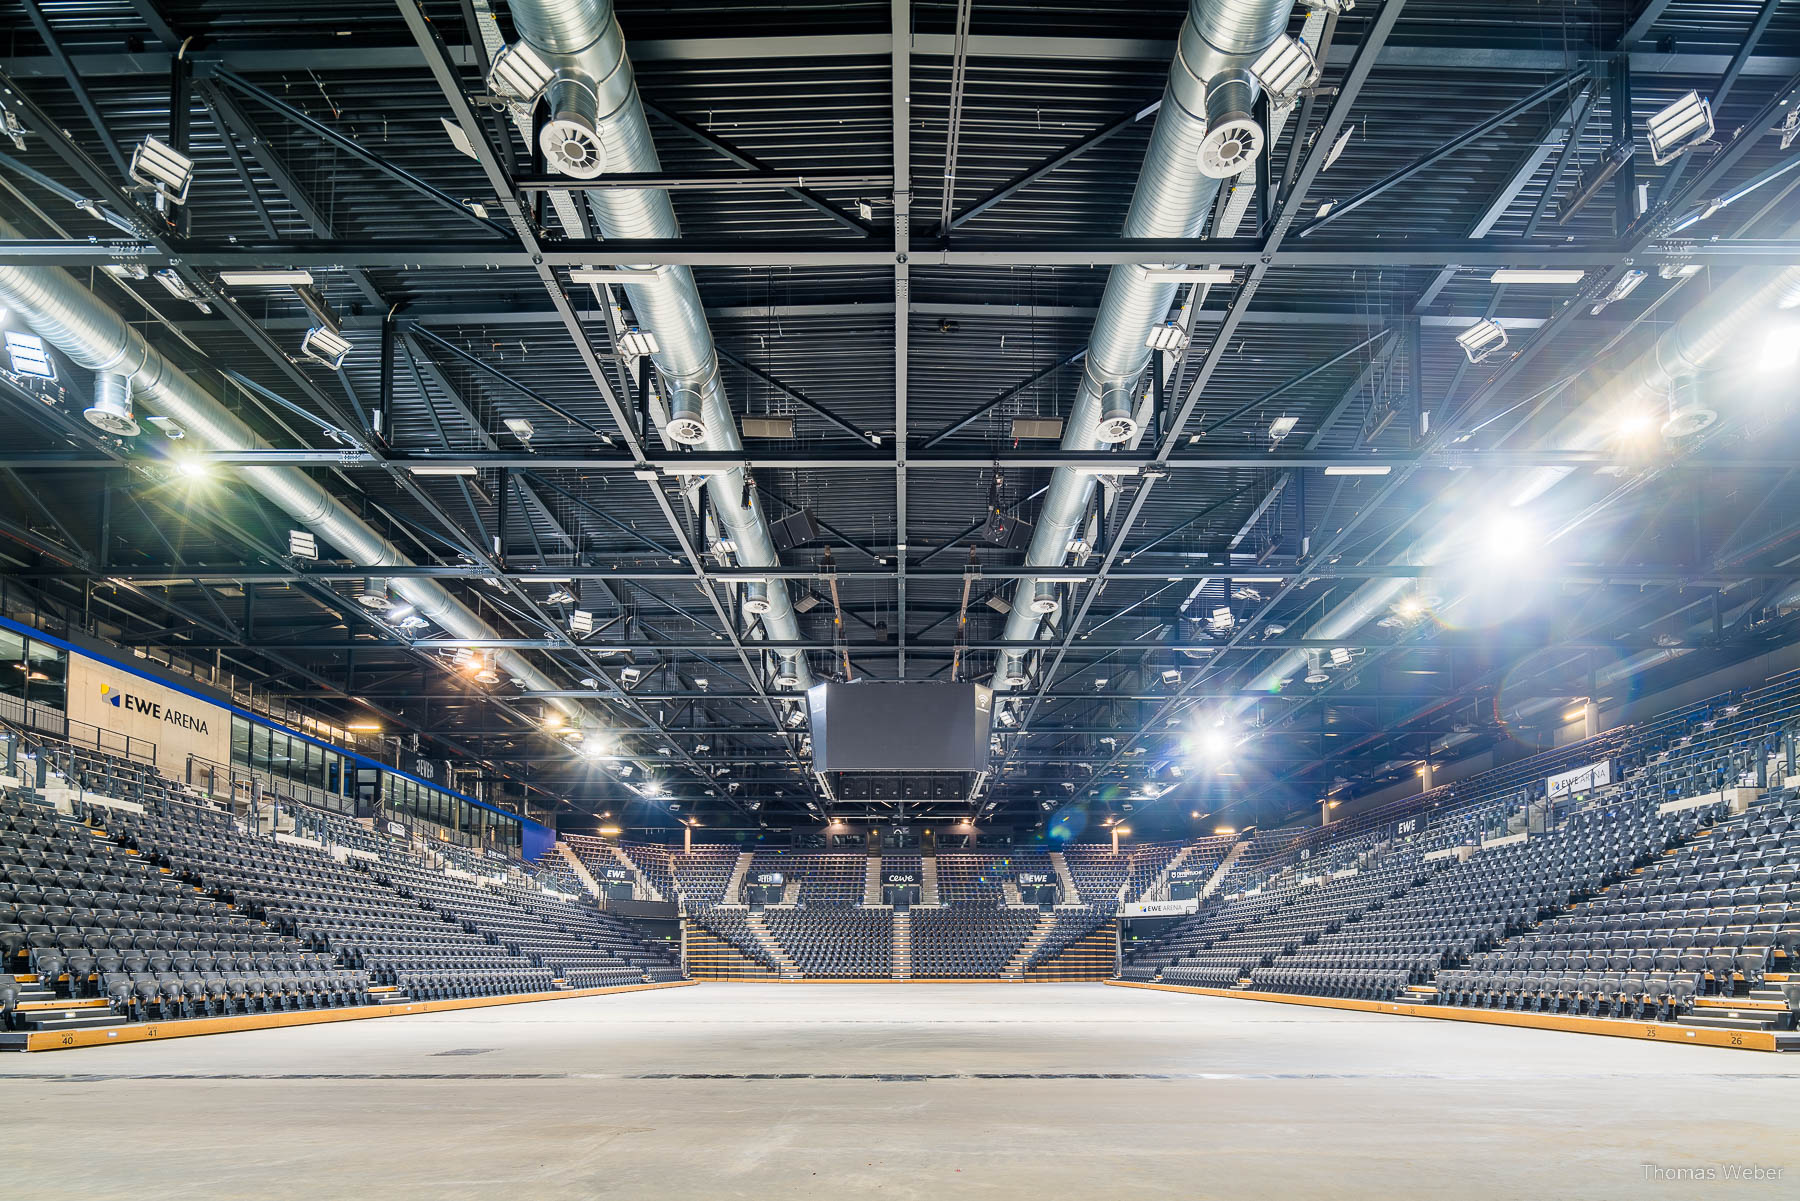 Fotos der EWE-Arena in Oldenburg, Thomas Weber, Fotograf Oldenburg